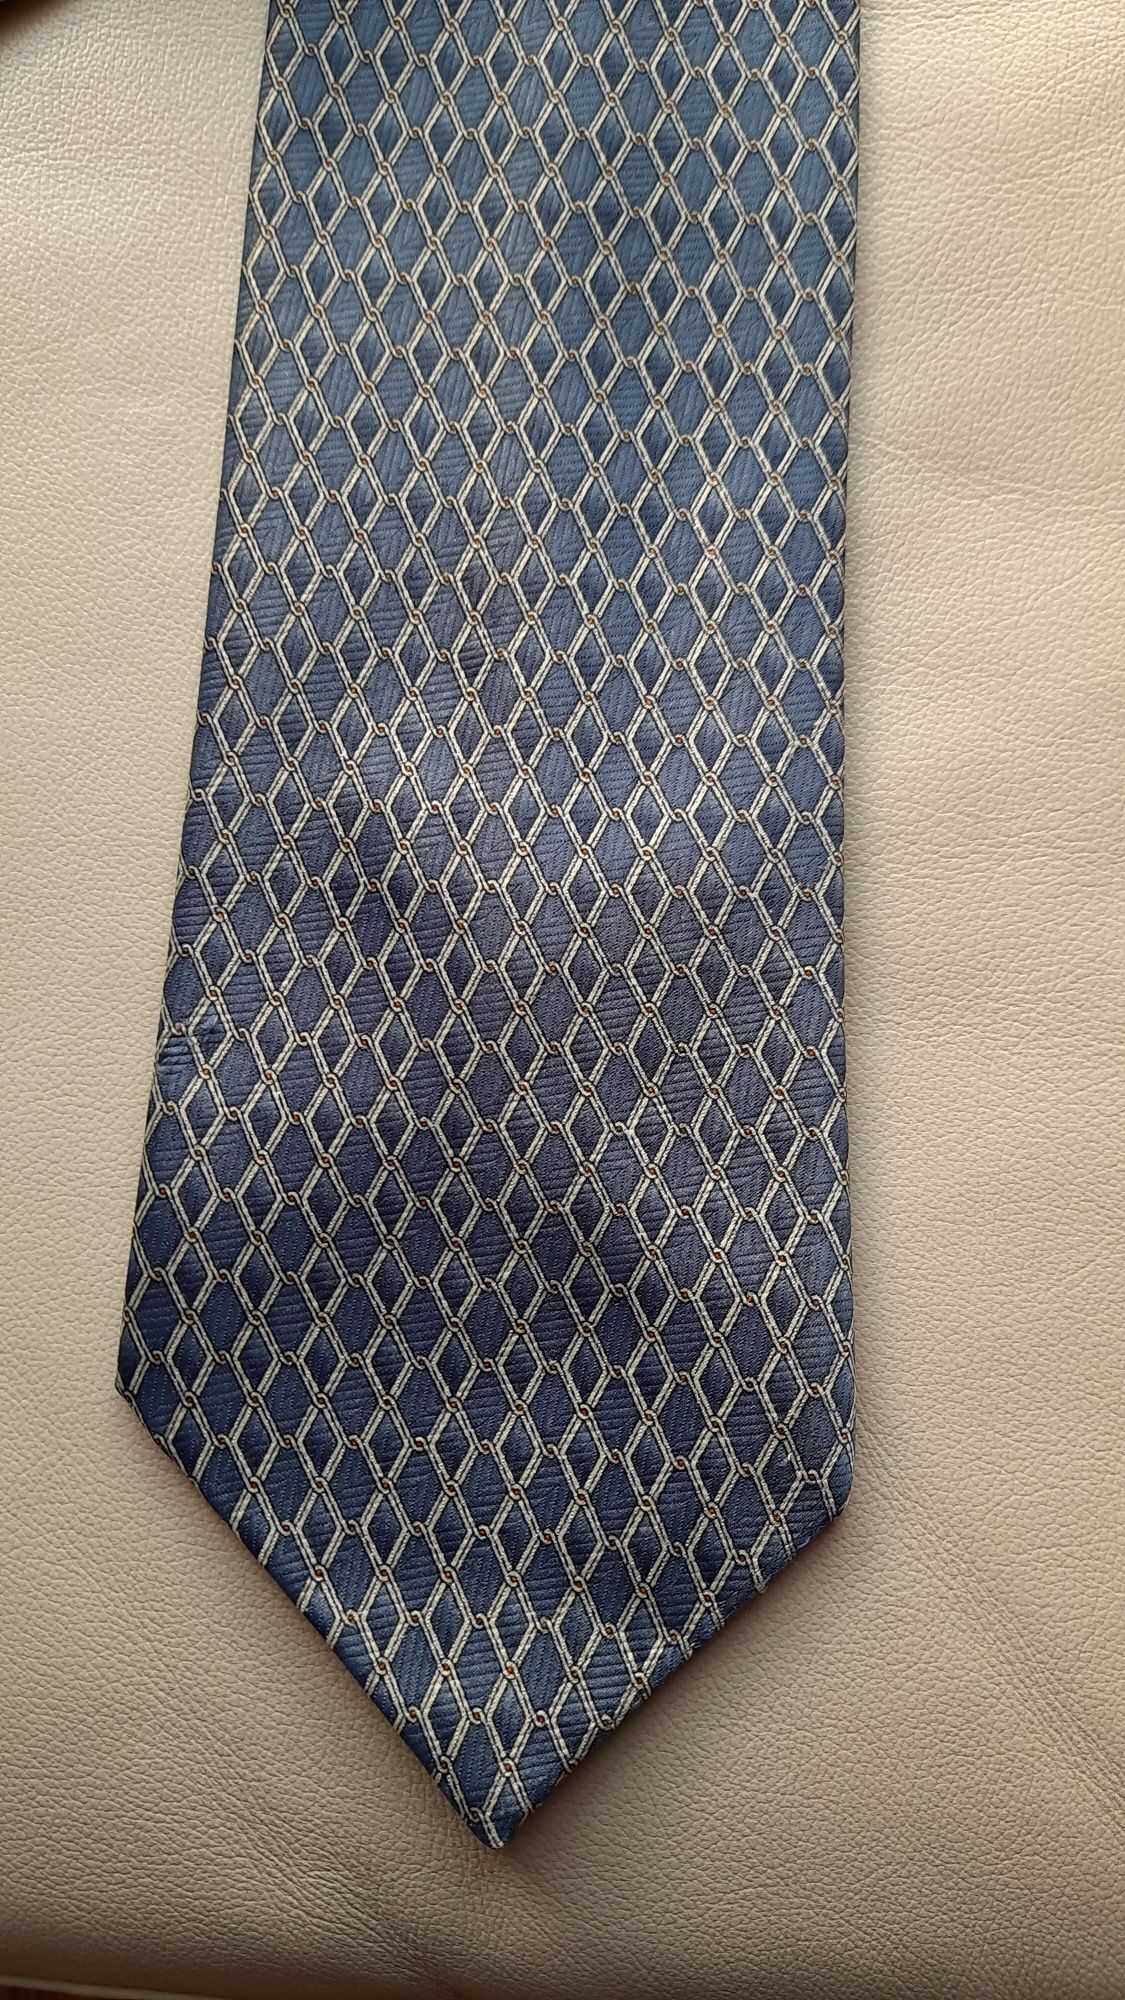 Krawat niebieski granatowy Piotr

Długość około 150 cm
Szerokość 10 cm